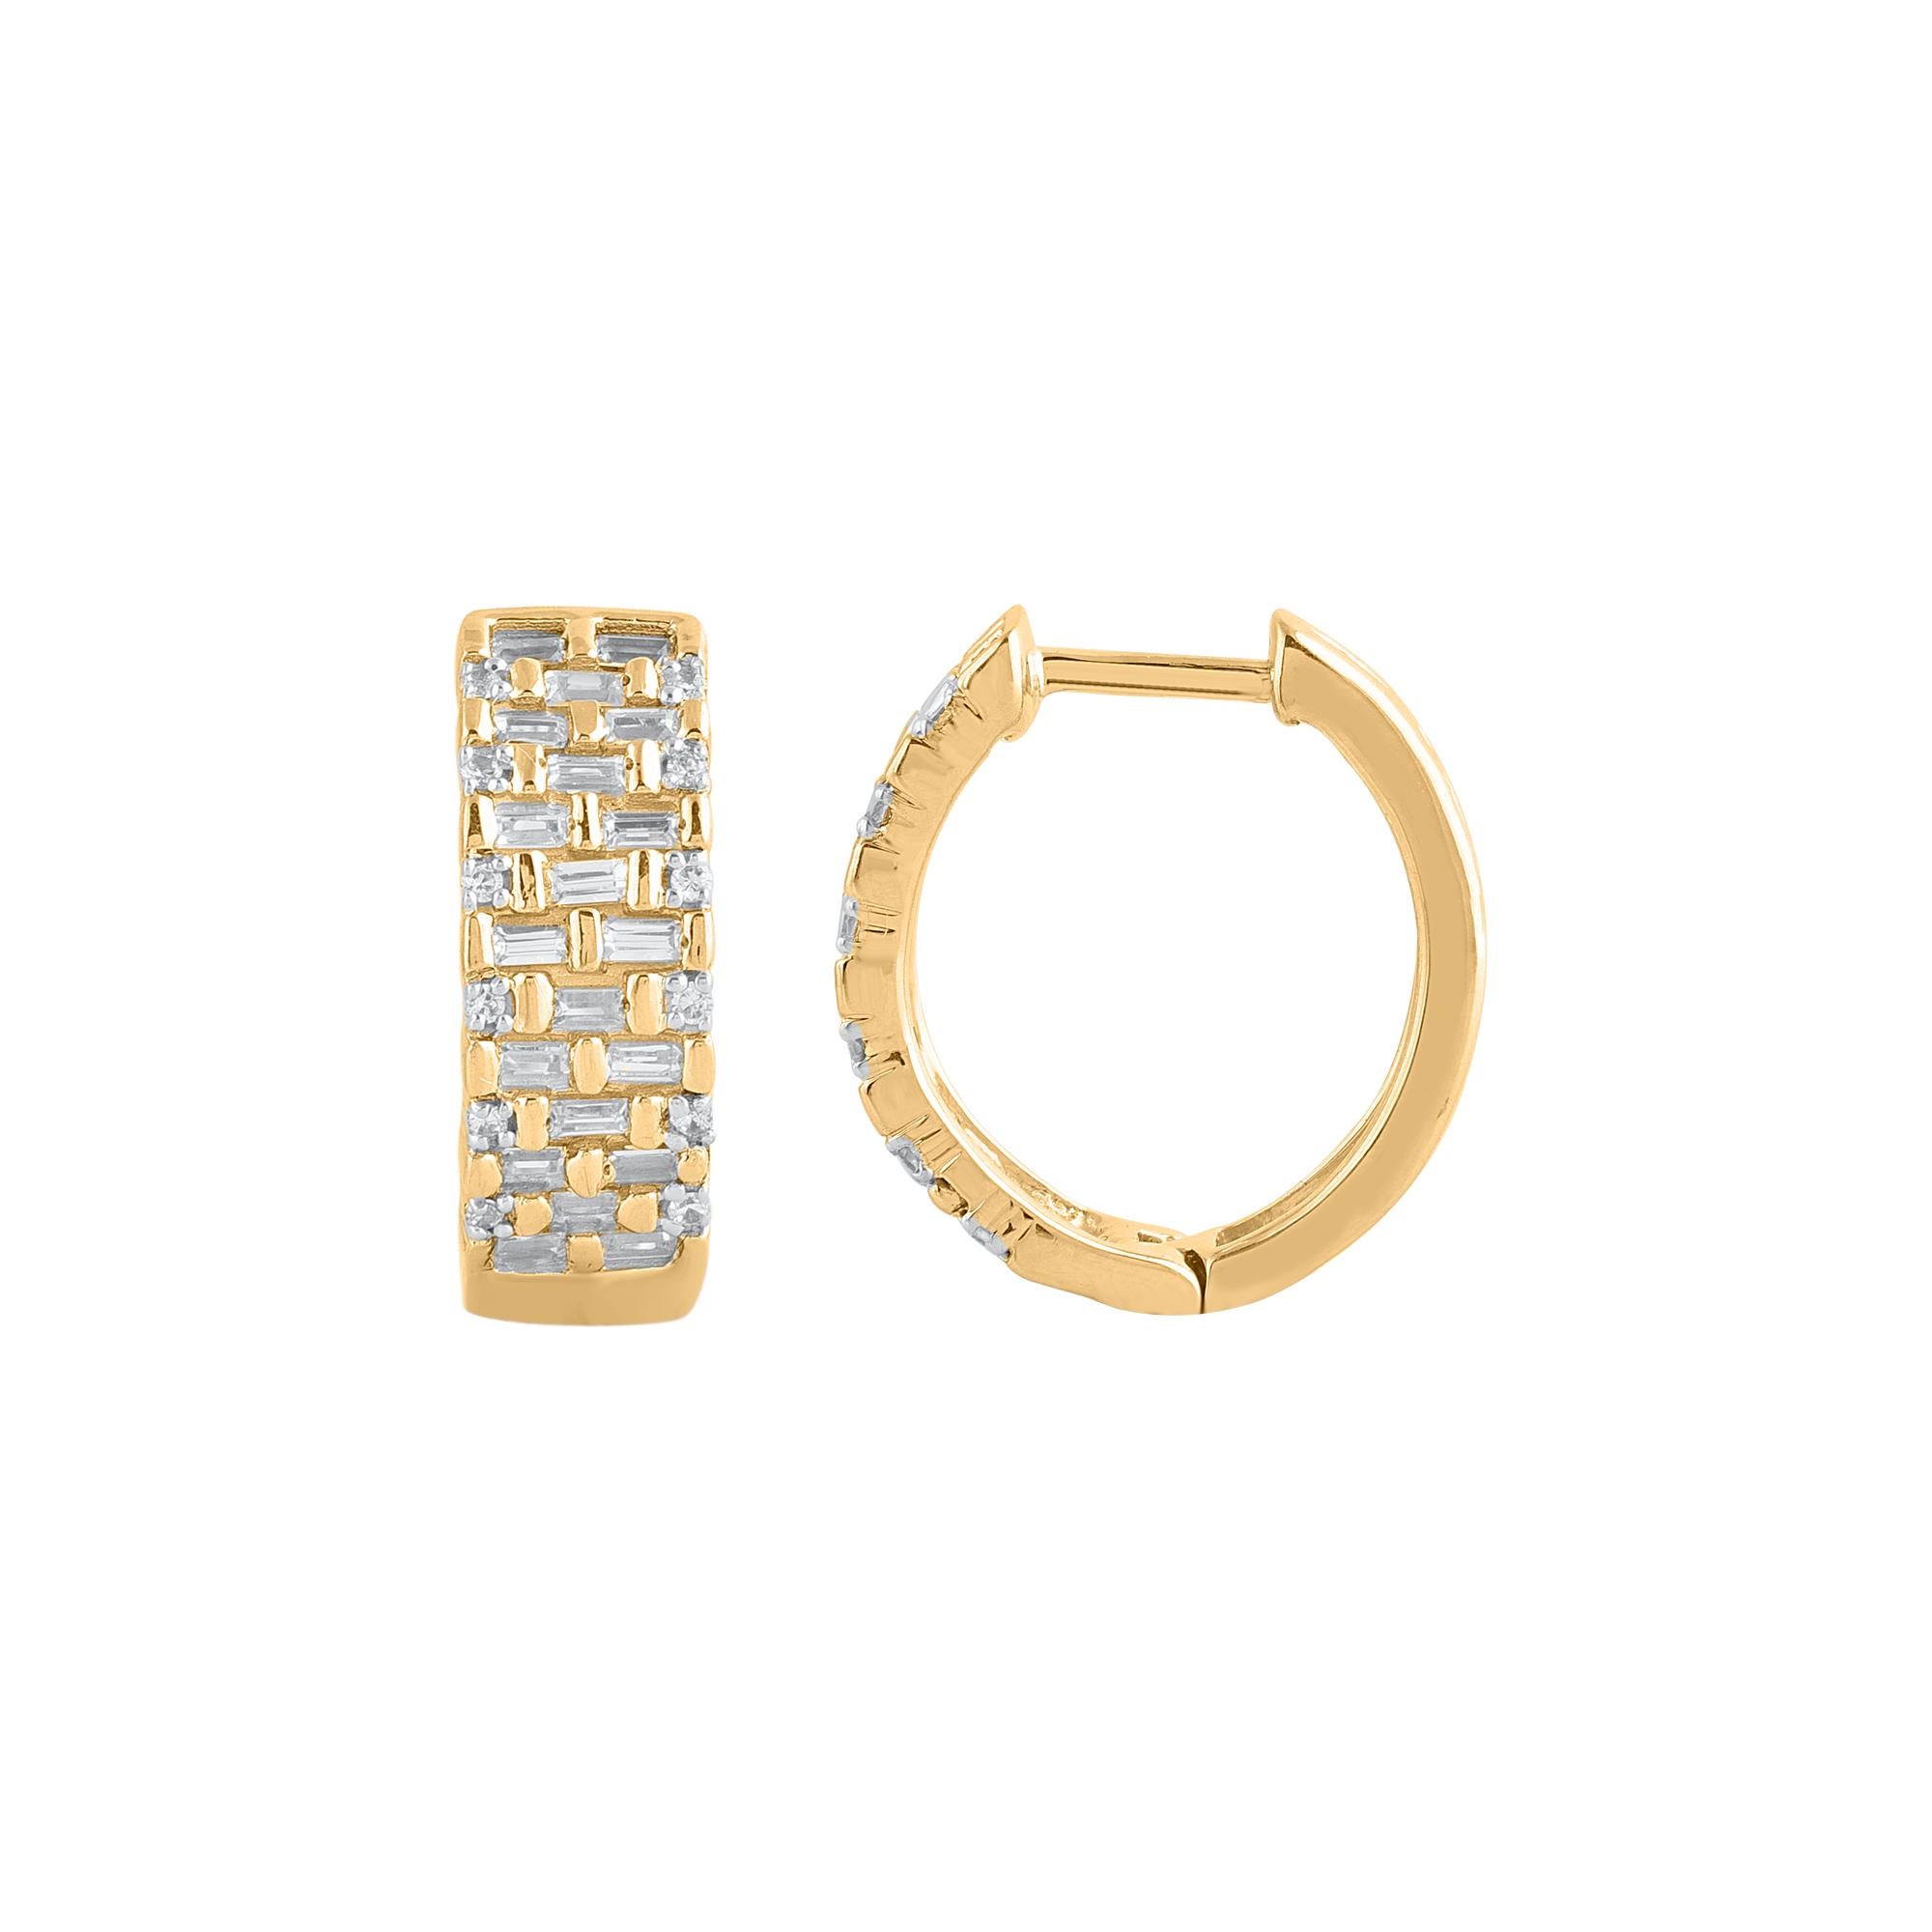 Perfektionieren Sie Ihre Wochenend-Looks mit diesen stilvollen Diamant-Ohrringen. Gefertigt aus 14 Karat Gelbgold mit 64 Diamanten im Brillantschliff und Baguette in Pflaster- und Kanalfassung. Das Gesamtgewicht der Diamanten beträgt 0,75 Karat.